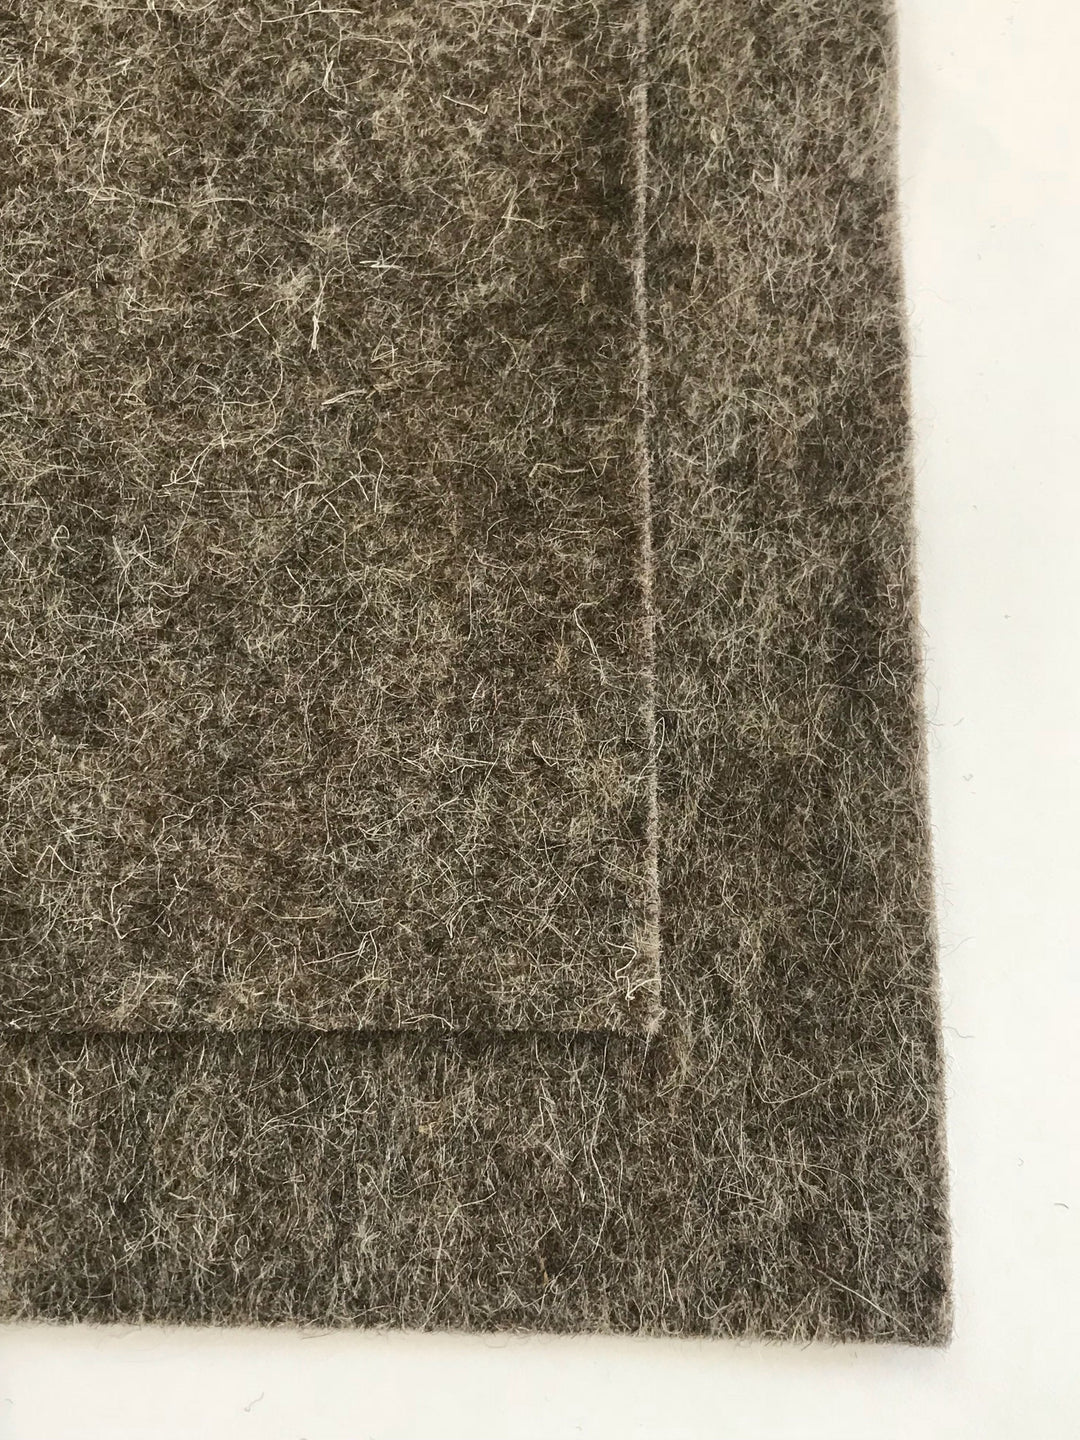 Feuille de feutre de laine mérinos marron écru chiné de 1 mm, 8 x 11 pouces, n° G12